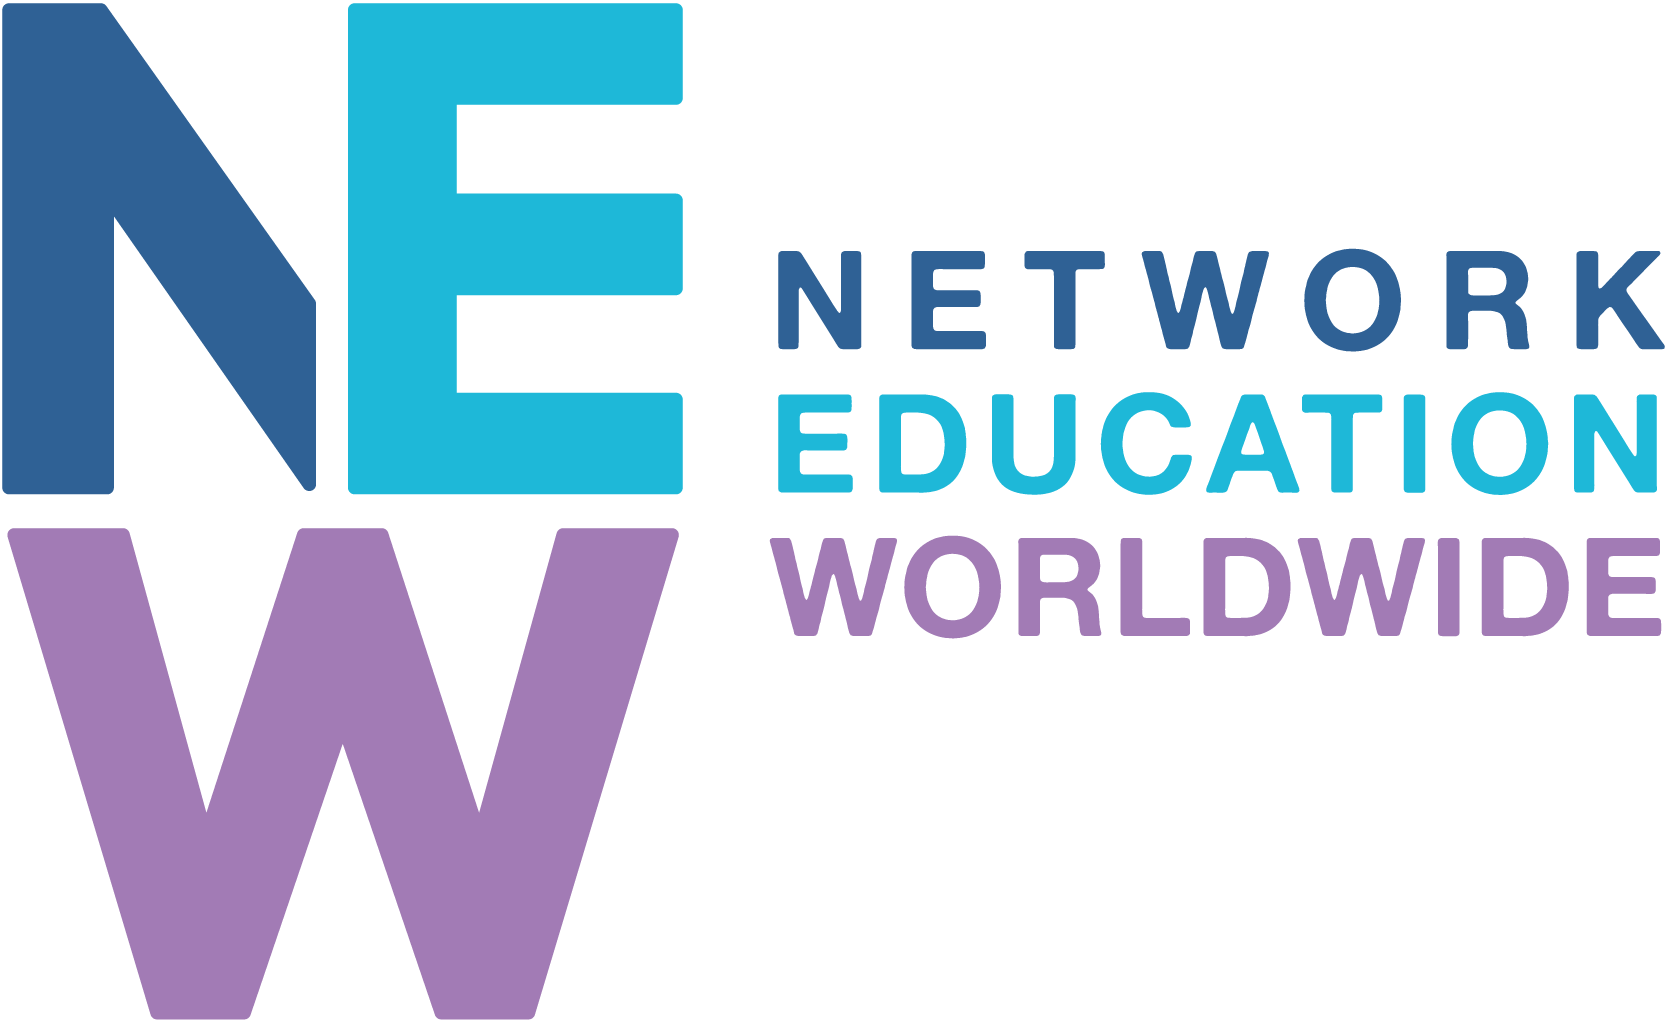 Network Education Worldwide